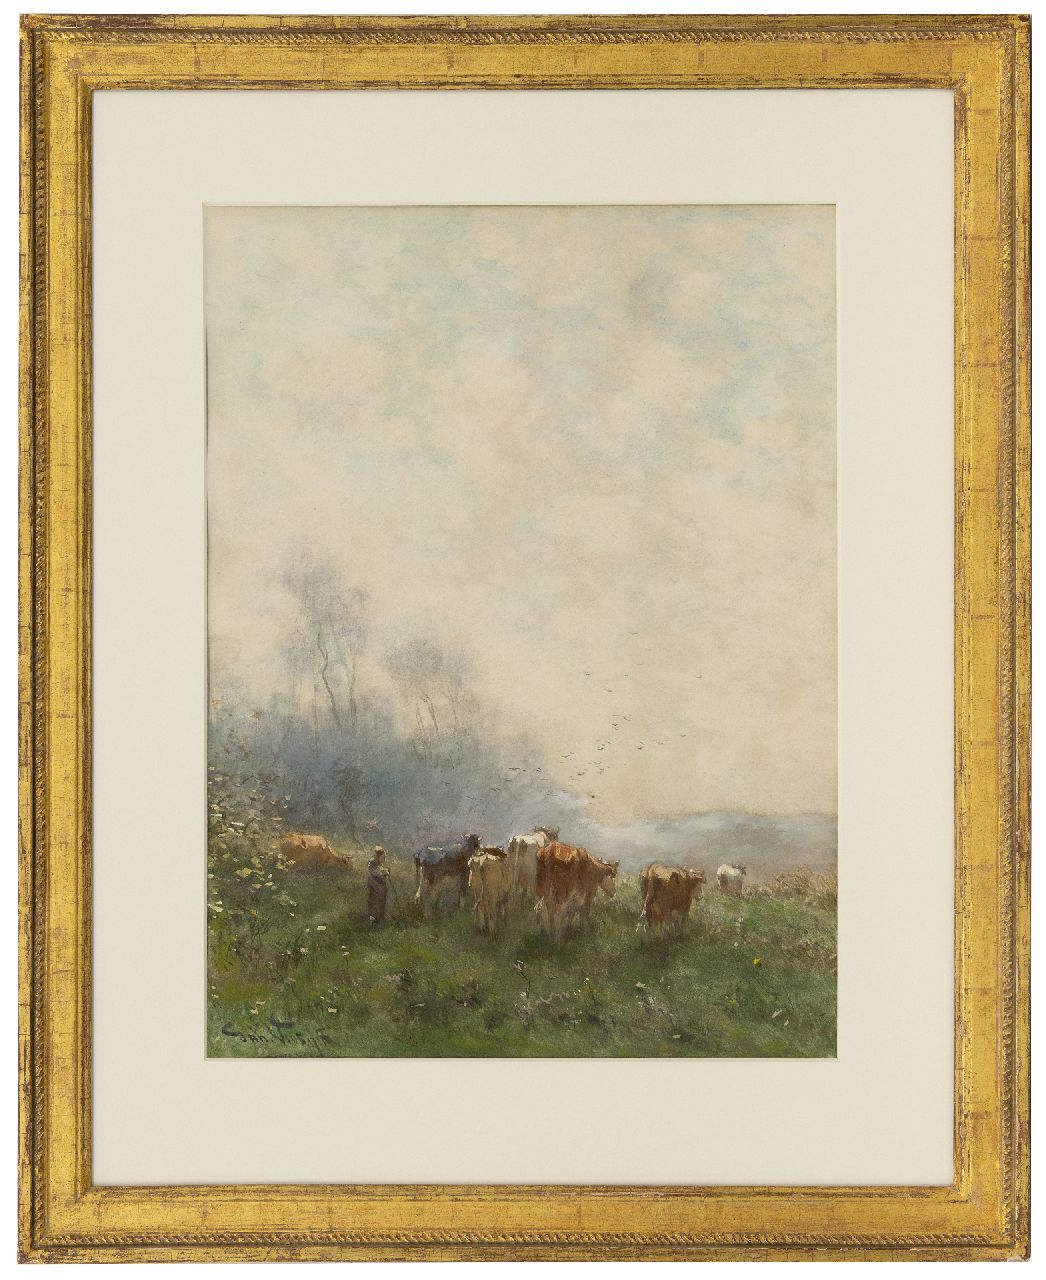 Vrolijk J.M.  | Johannes Martinus 'Jan' Vrolijk, Herderin met haar kudde in de ochtendnevel, aquarel op papier 53,5 x 39,4 cm, gesigneerd linksonder